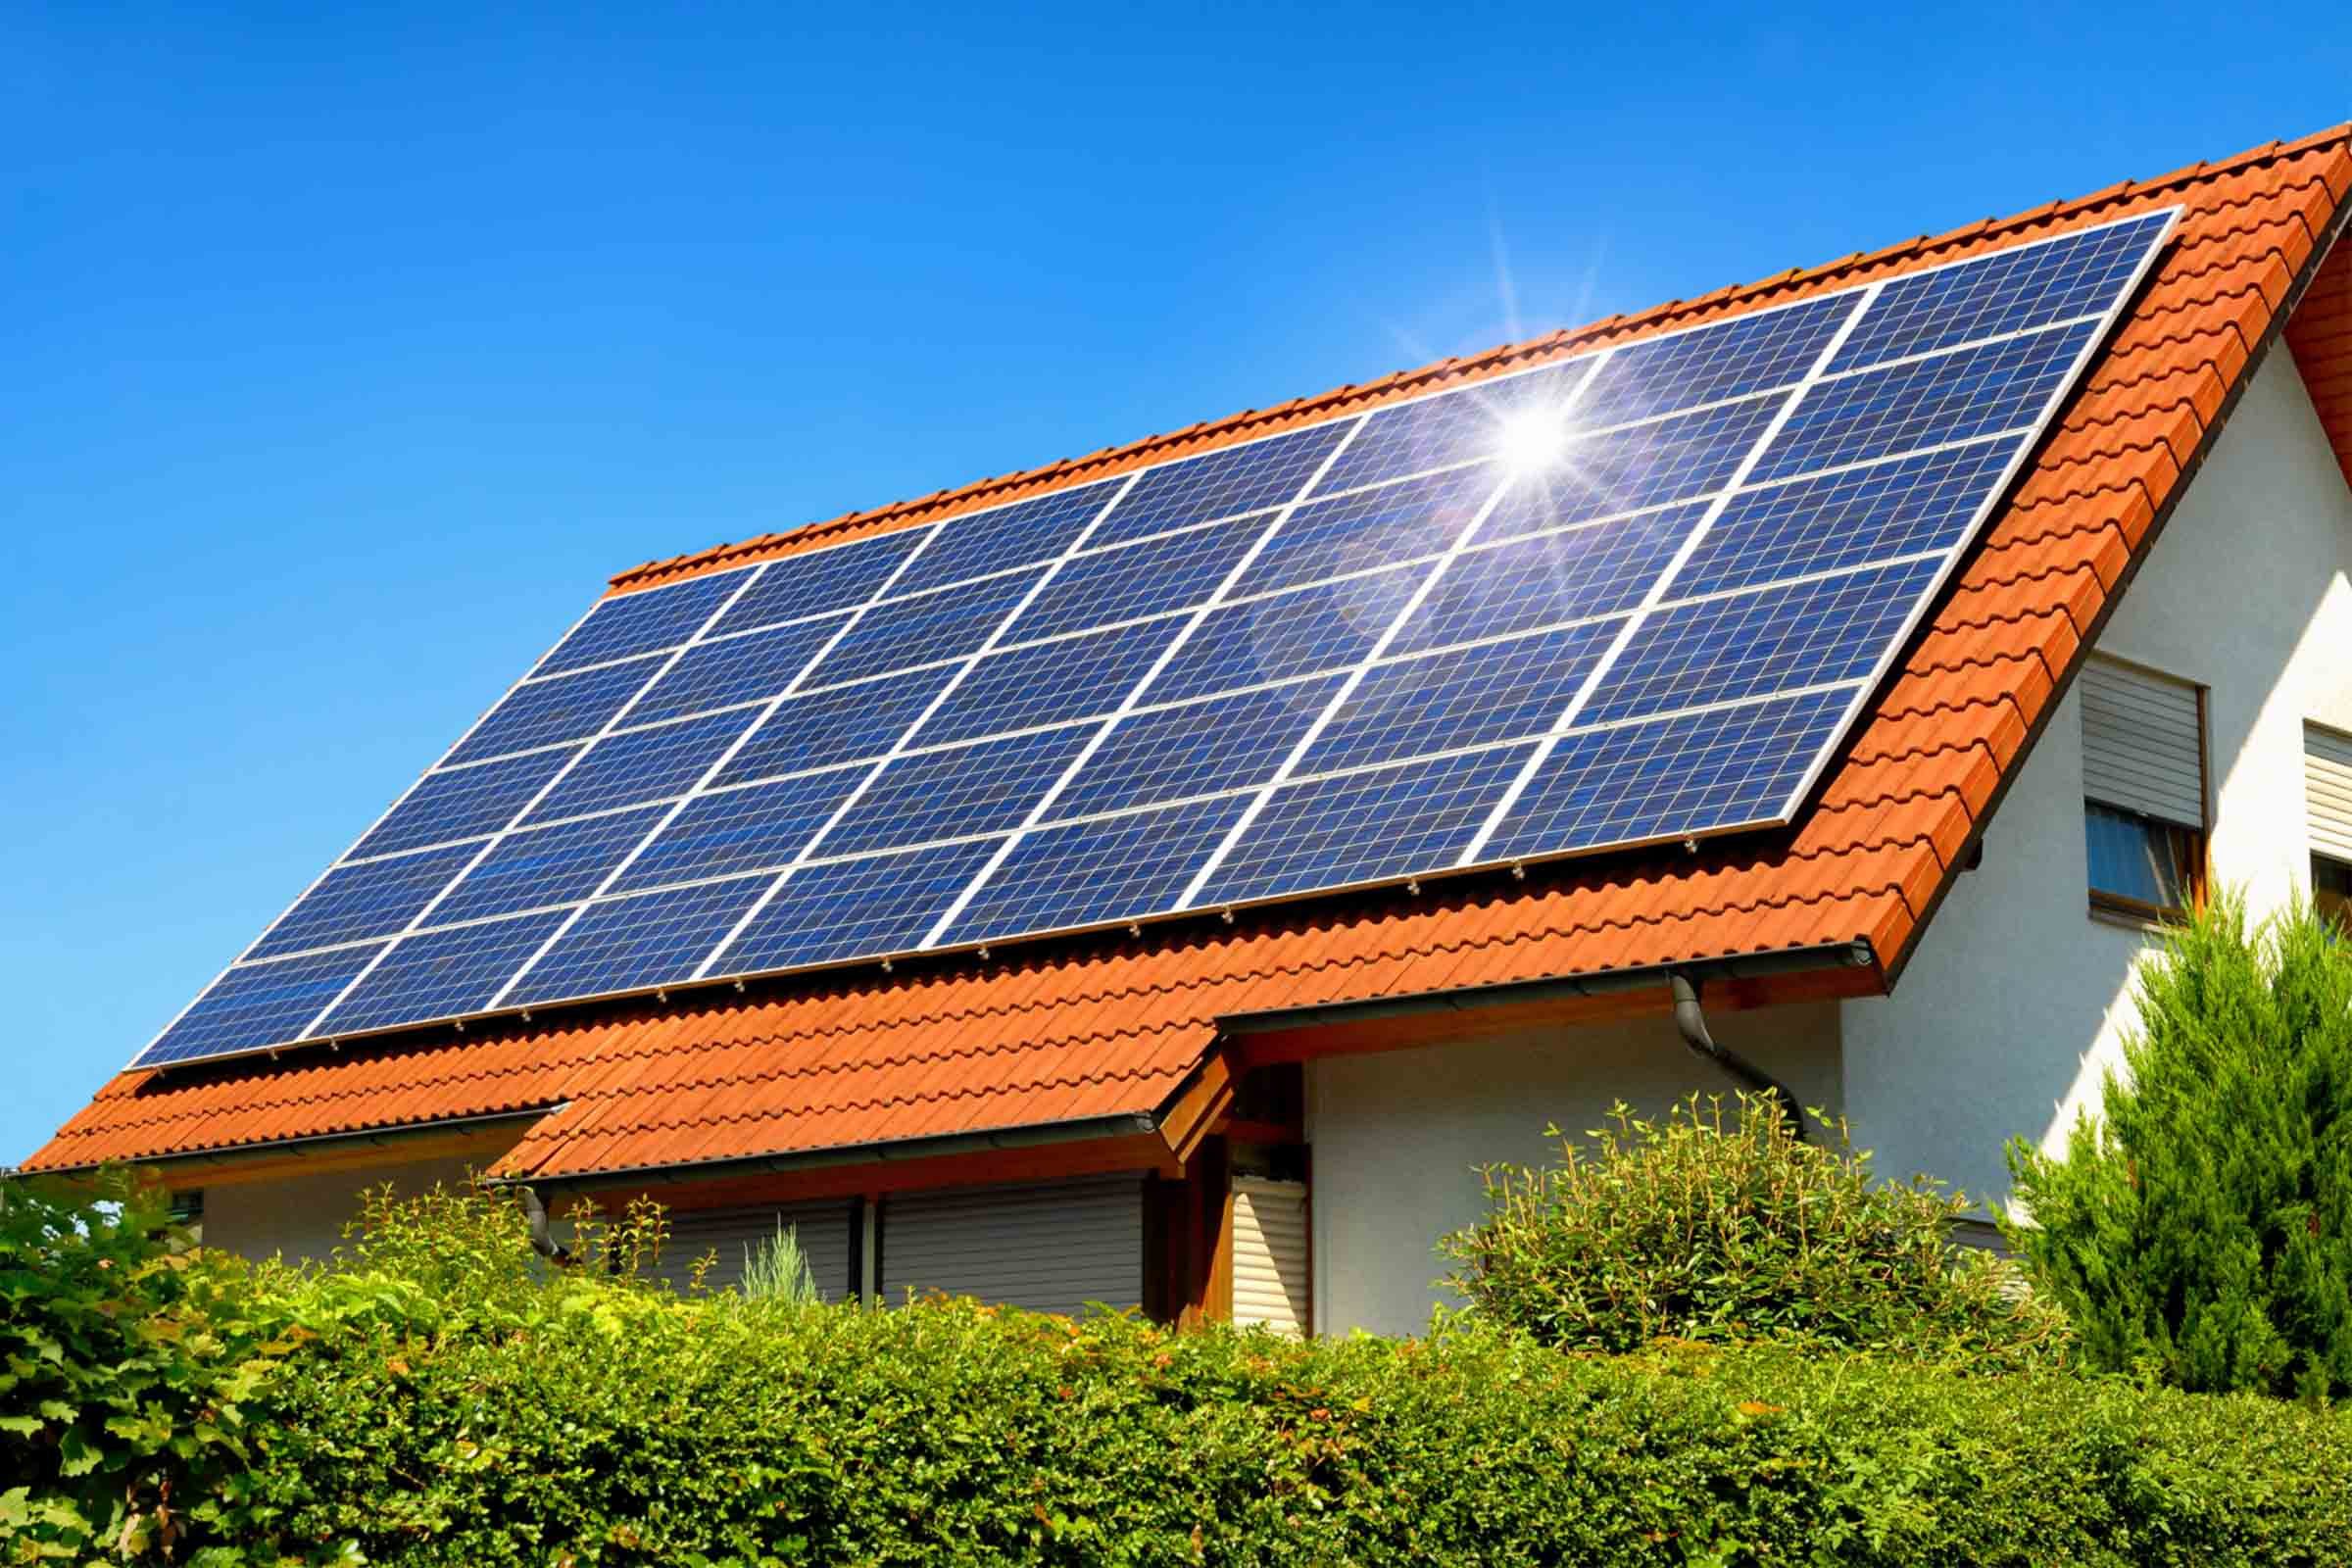 Cómo funcionan los paneles solares?